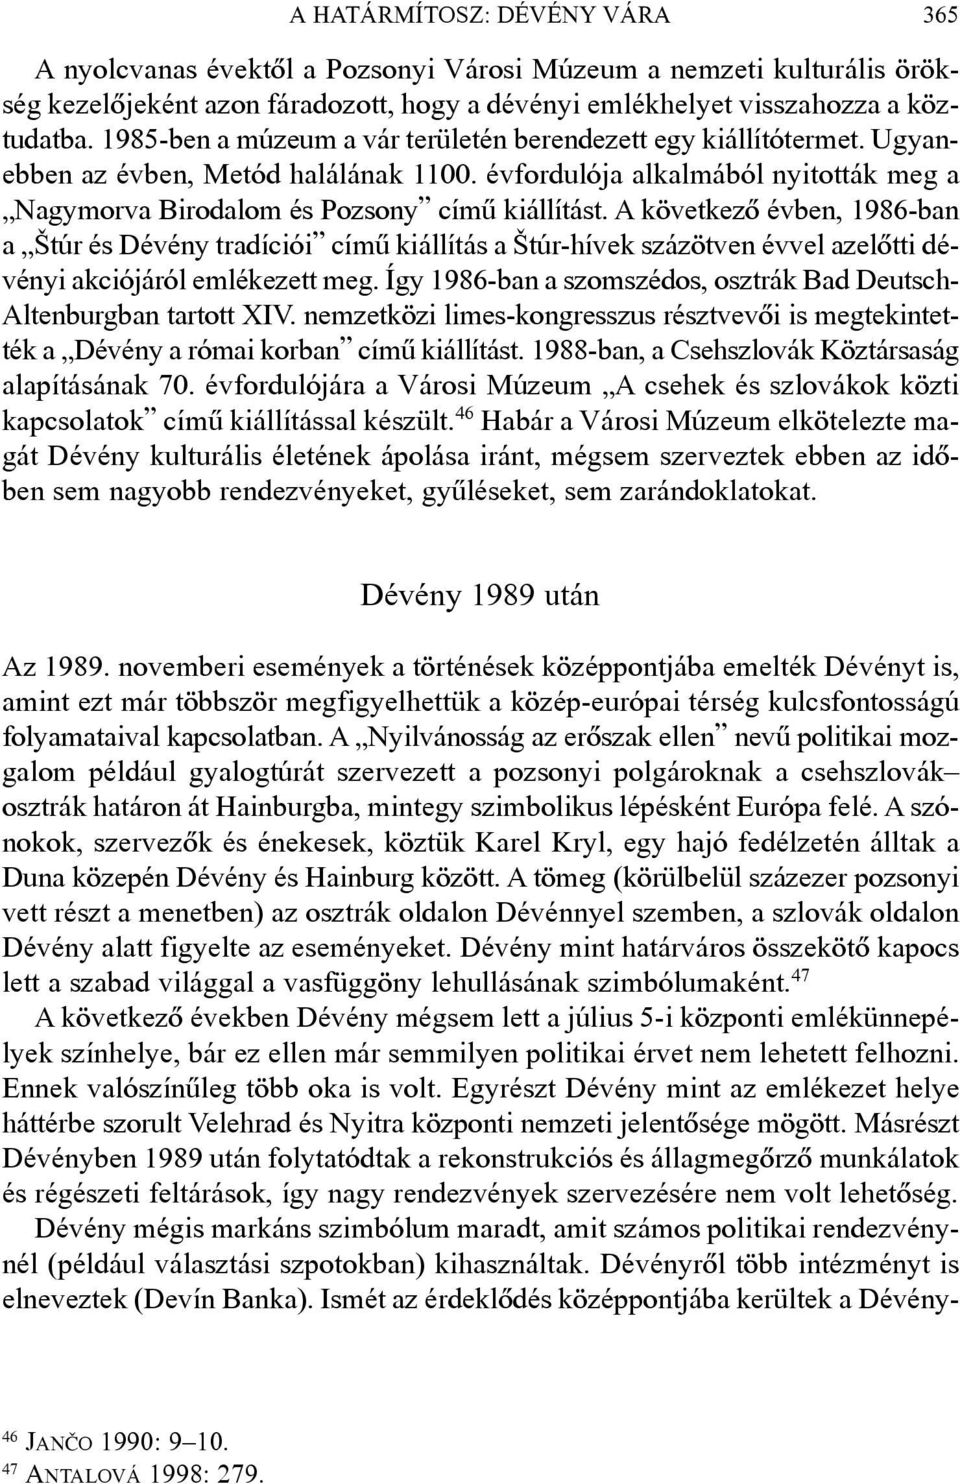 A következõ évben, 1986-ban a Štúr és Dévény tradíciói címû kiállítás a Štúr-hívek százötven évvel azelõtti dévényi akciójáról emlékezett meg.